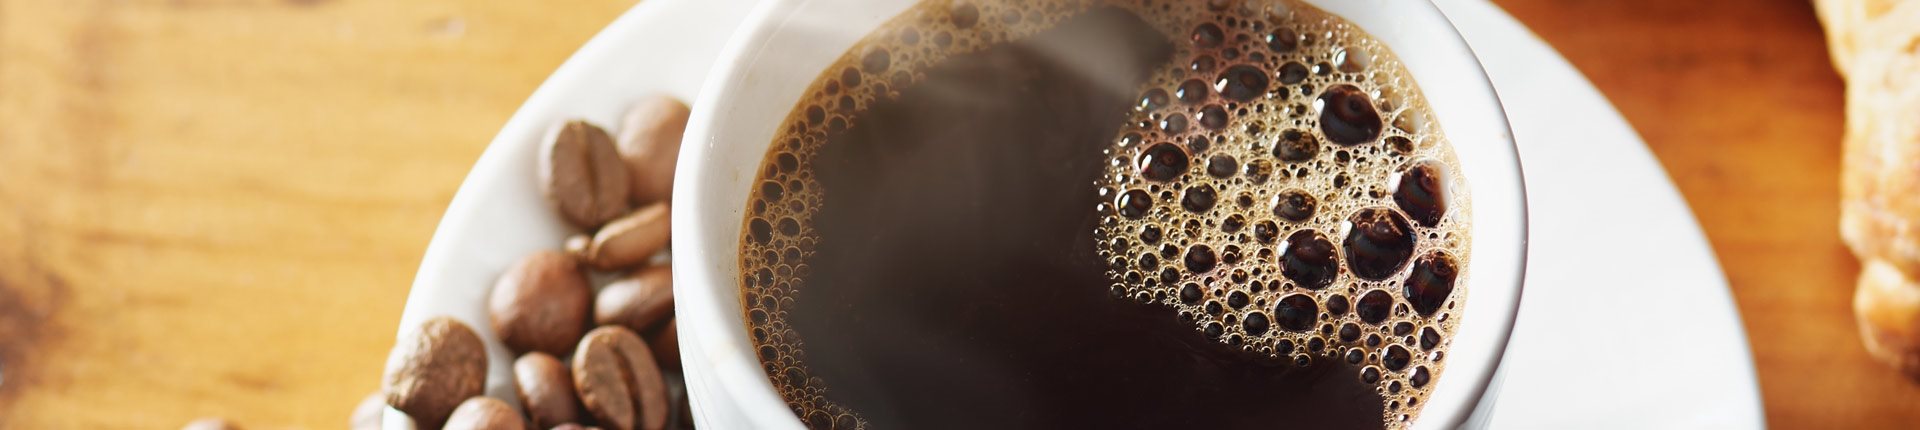 Czy kawa jest szkodliwa dla nerek?